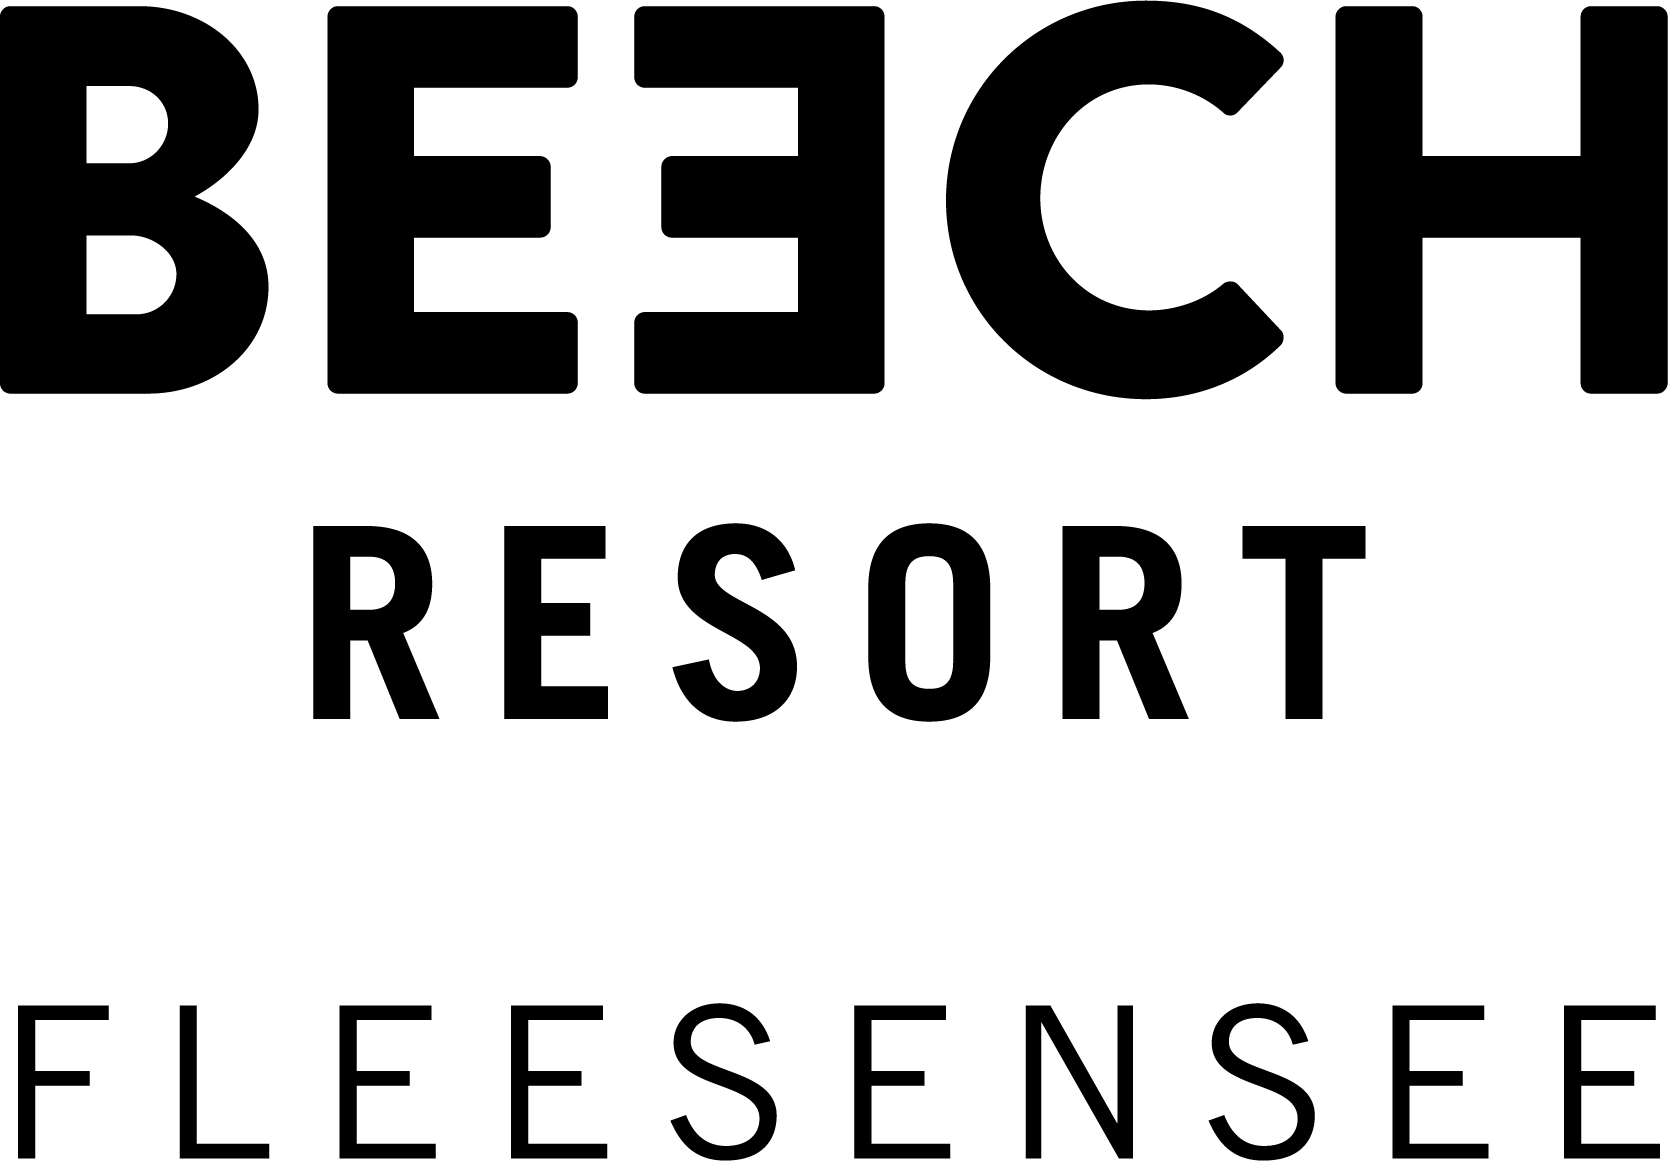 Ein schwarzer Hintergrund mit einem schwarzen Quadrat im BEECH Resort am Fleesensee - Perfektes Ziel